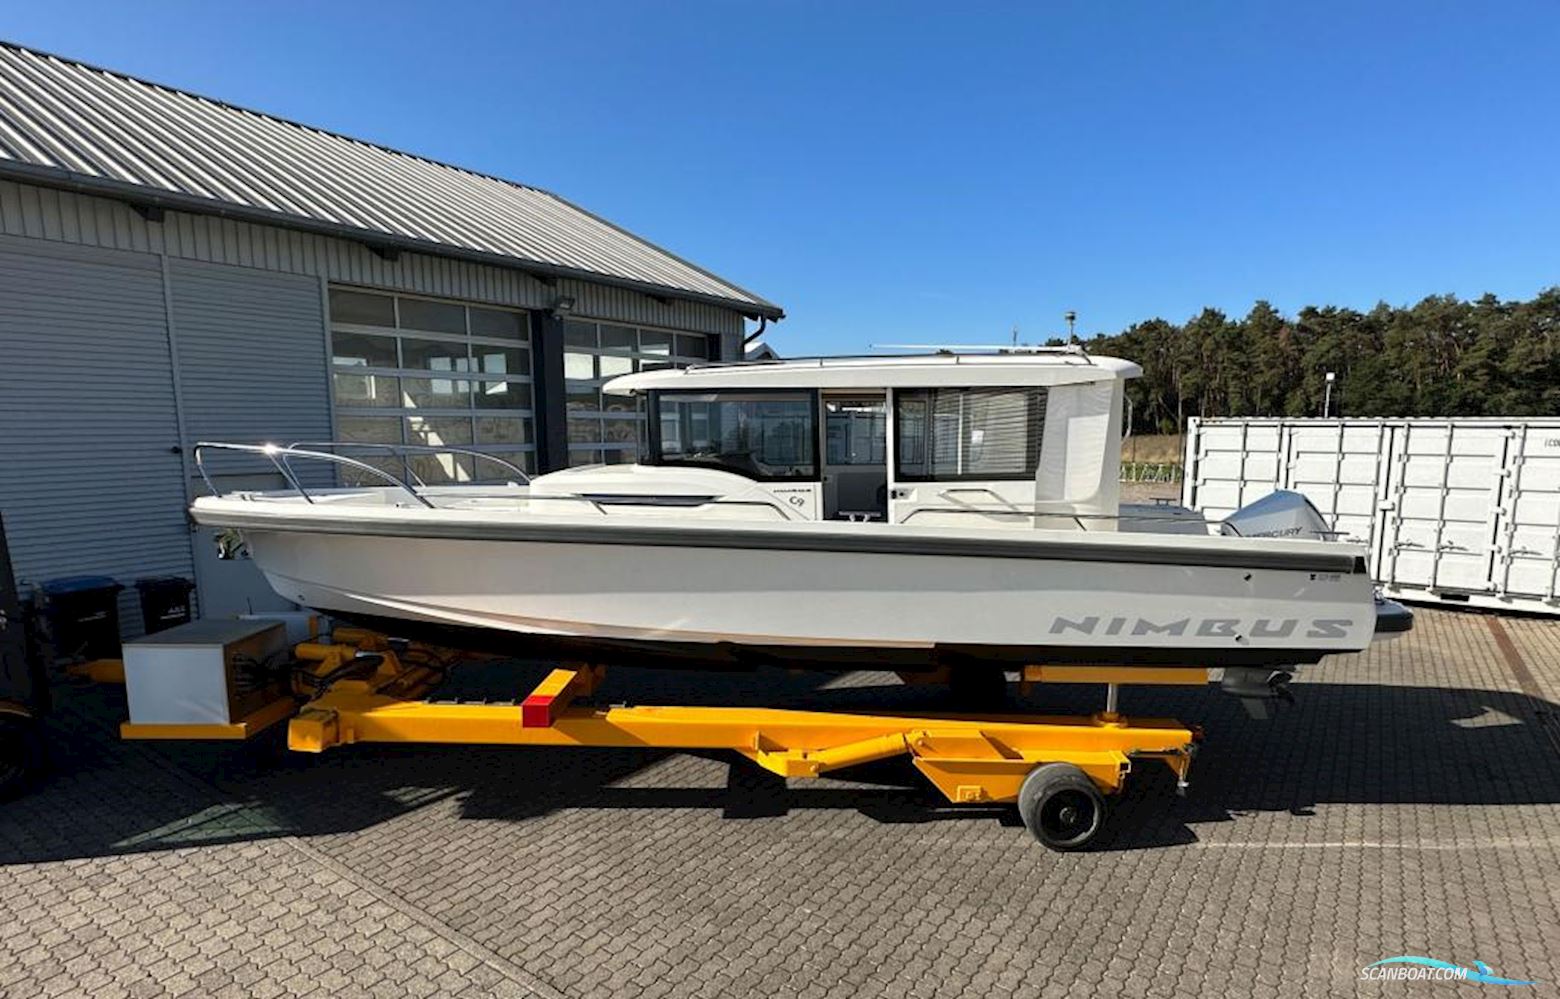 Nimbus C9 Motorbåt 2019, med Mercury motor, Tyskland